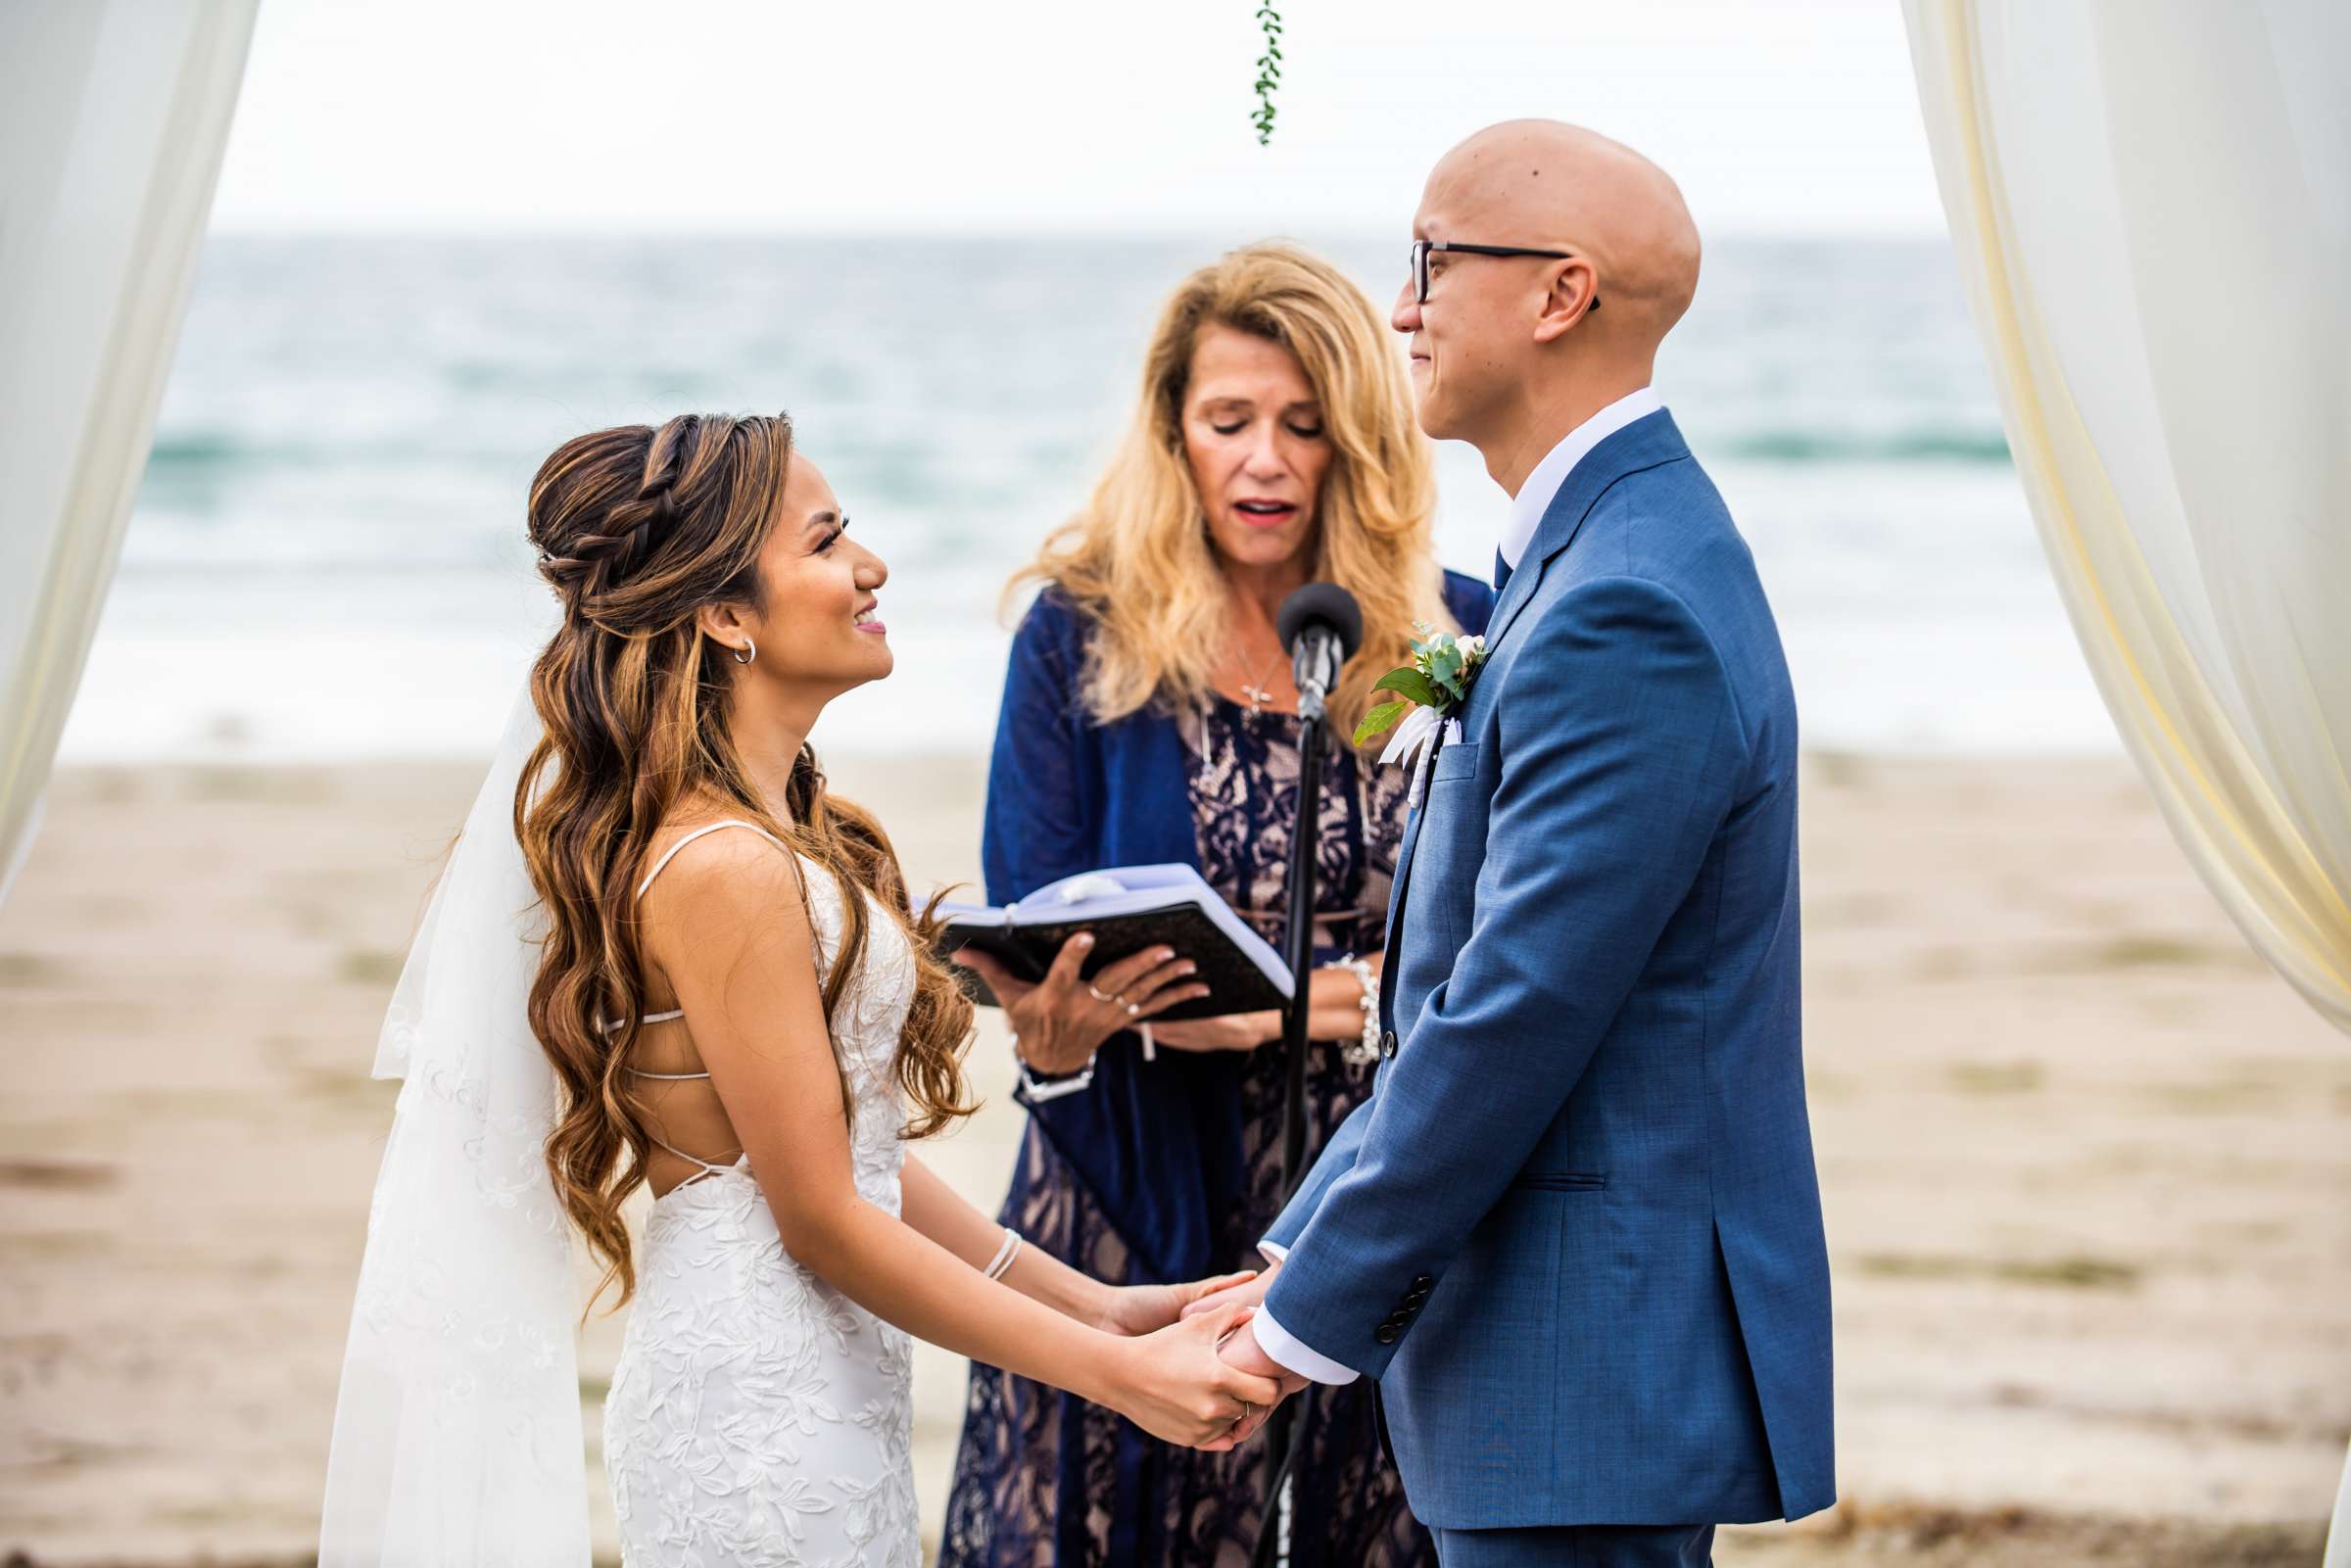 La Jolla Shores Hotel Wedding, Kim and Evan Wedding Photo #13 by True Photography